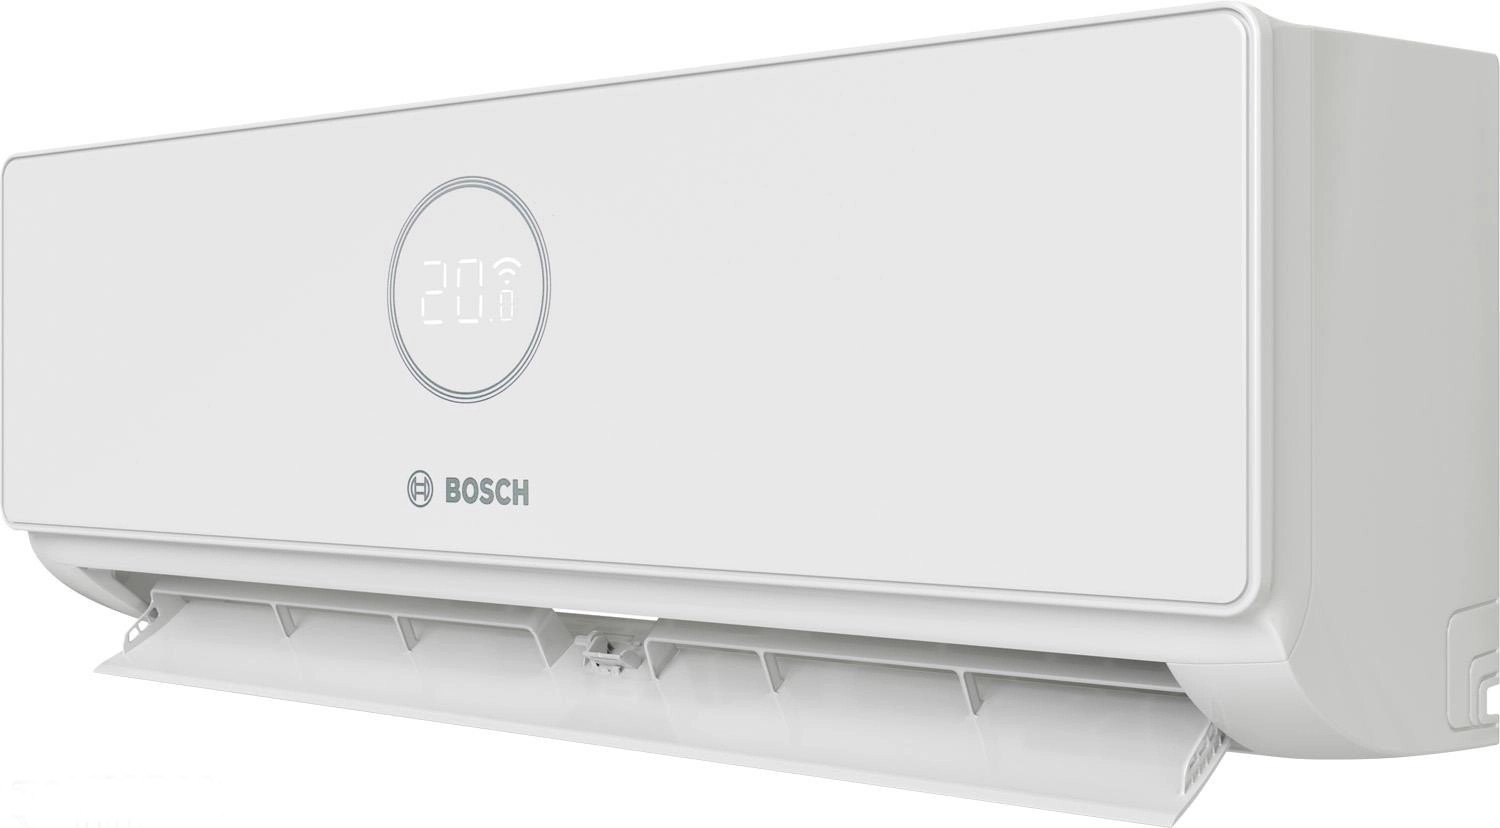 Внутренний блок мультисплит-системы Bosch CL3000i W 20E 2,0 кВт отзывы - изображения 5